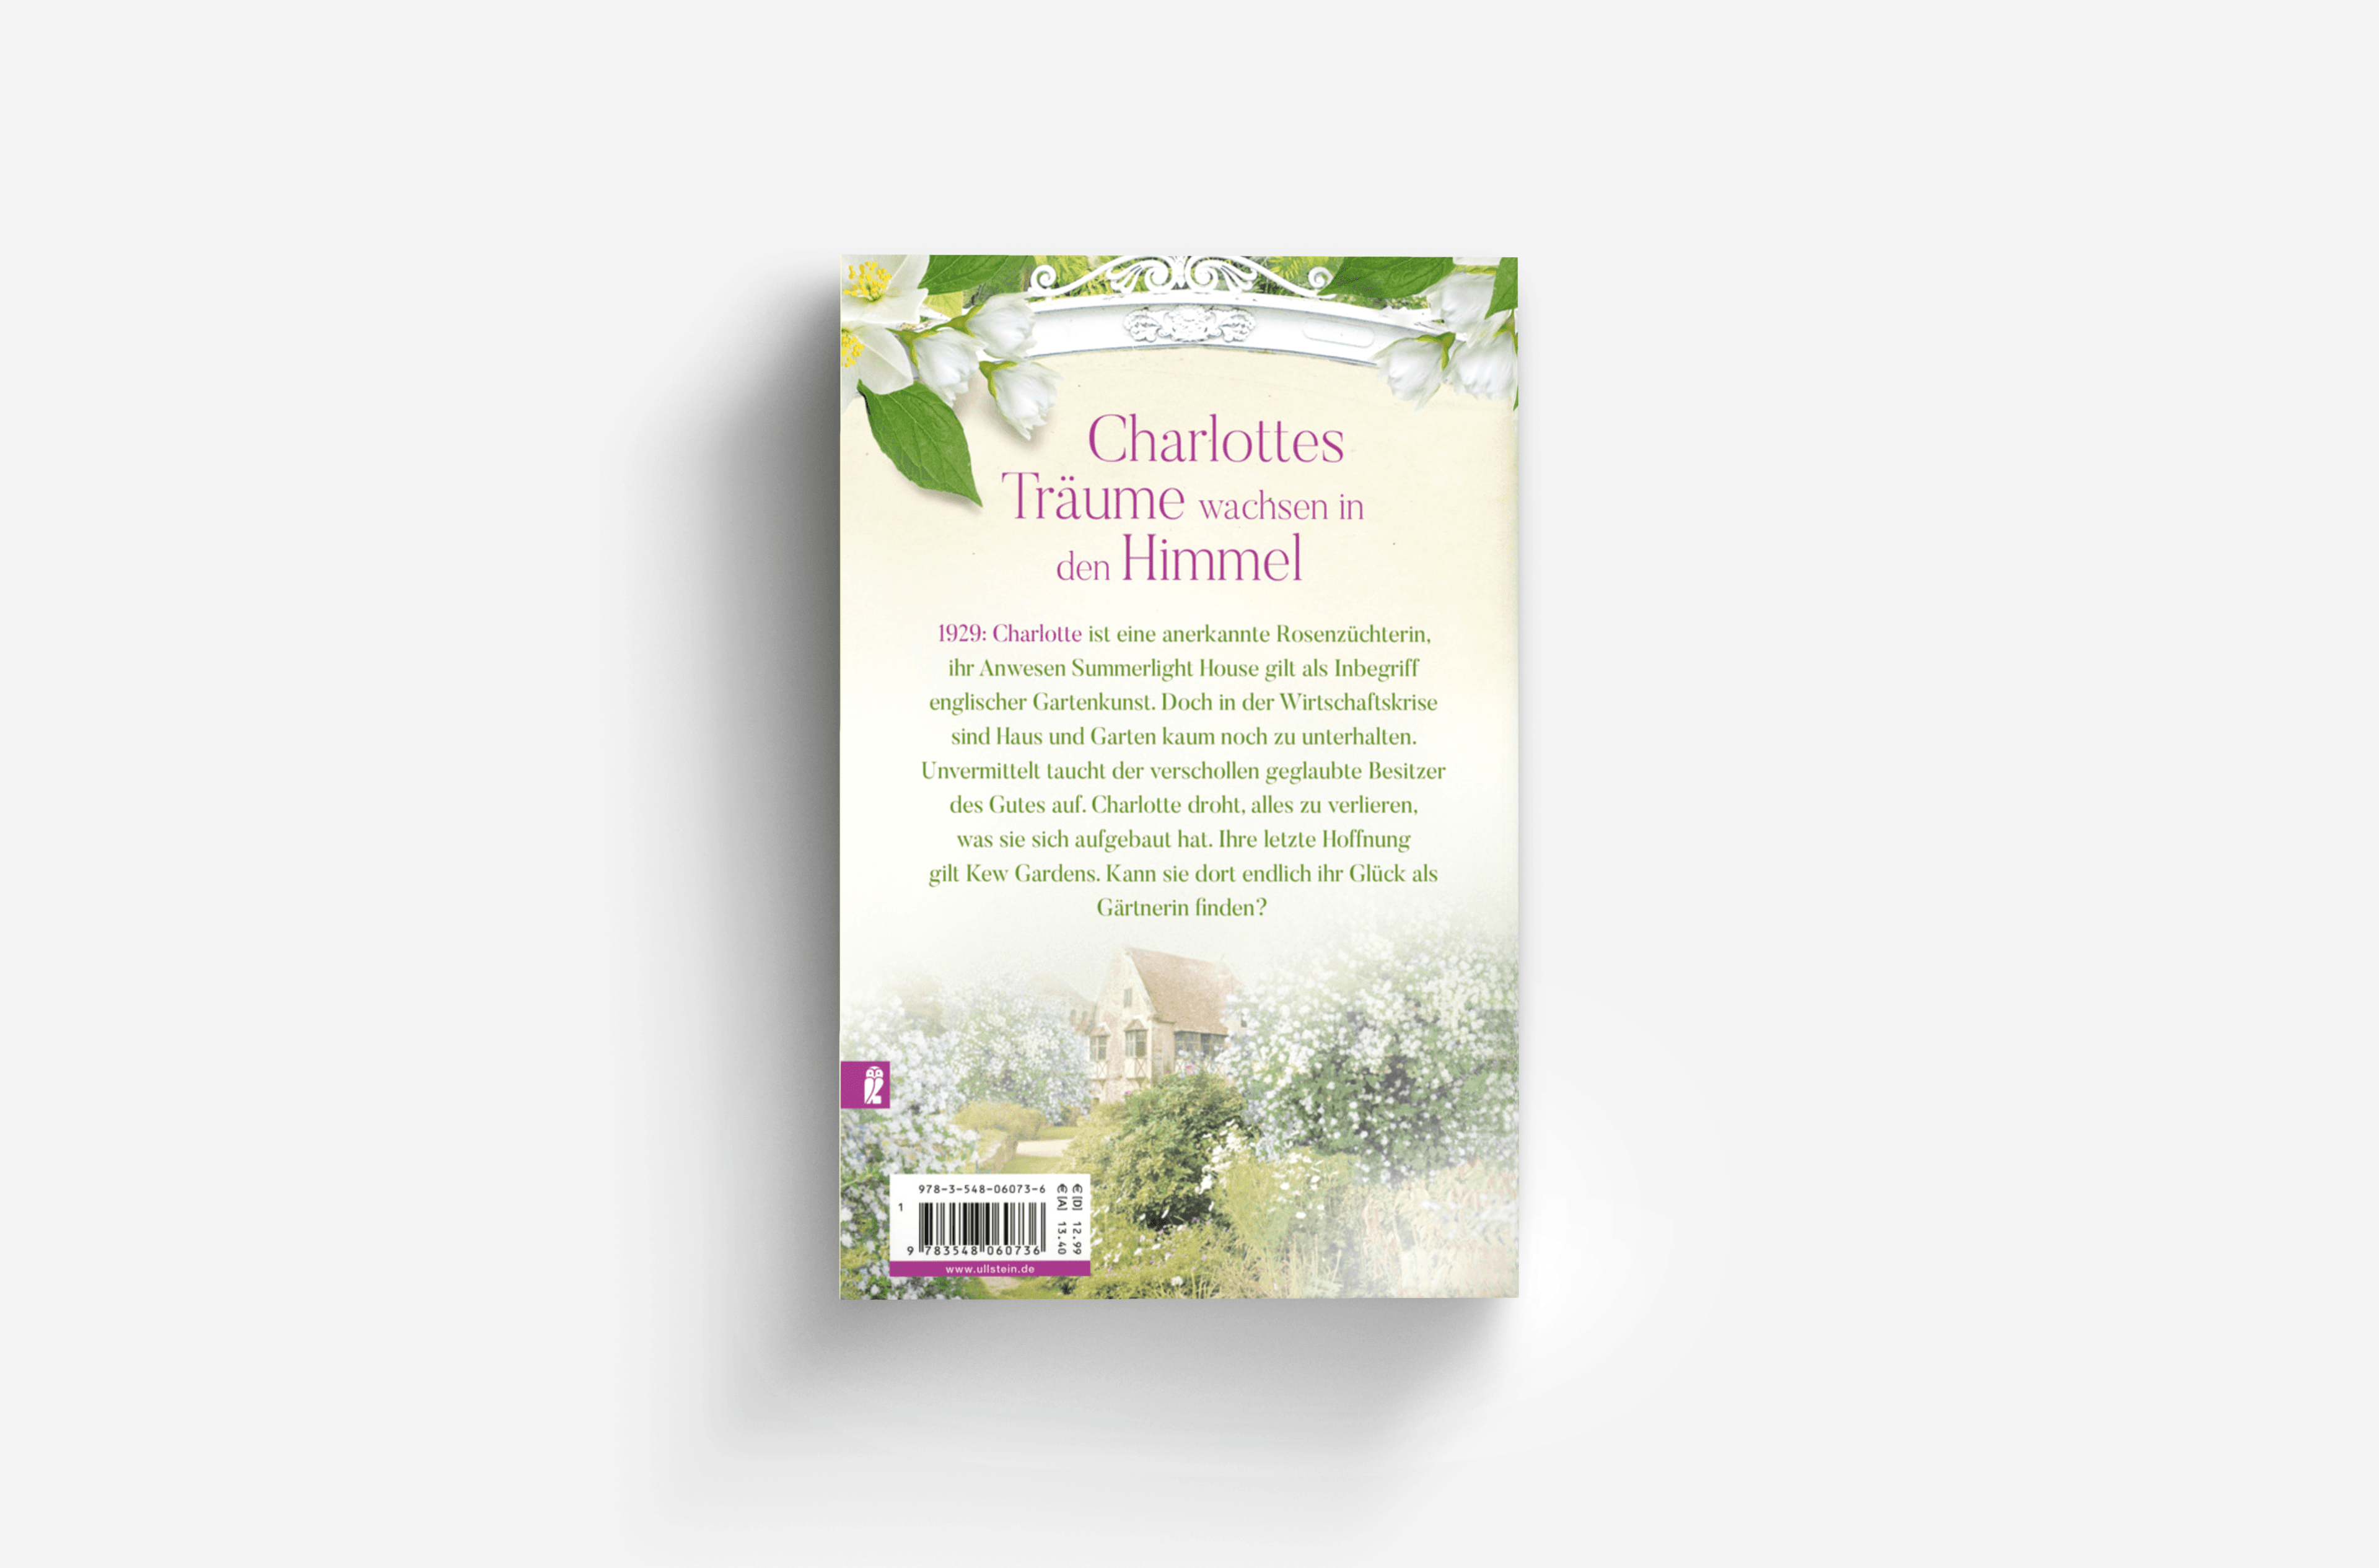 Buchcover von Die englische Gärtnerin - Weißer Jasmin (Die Gärtnerin von Kew Gardens 3)